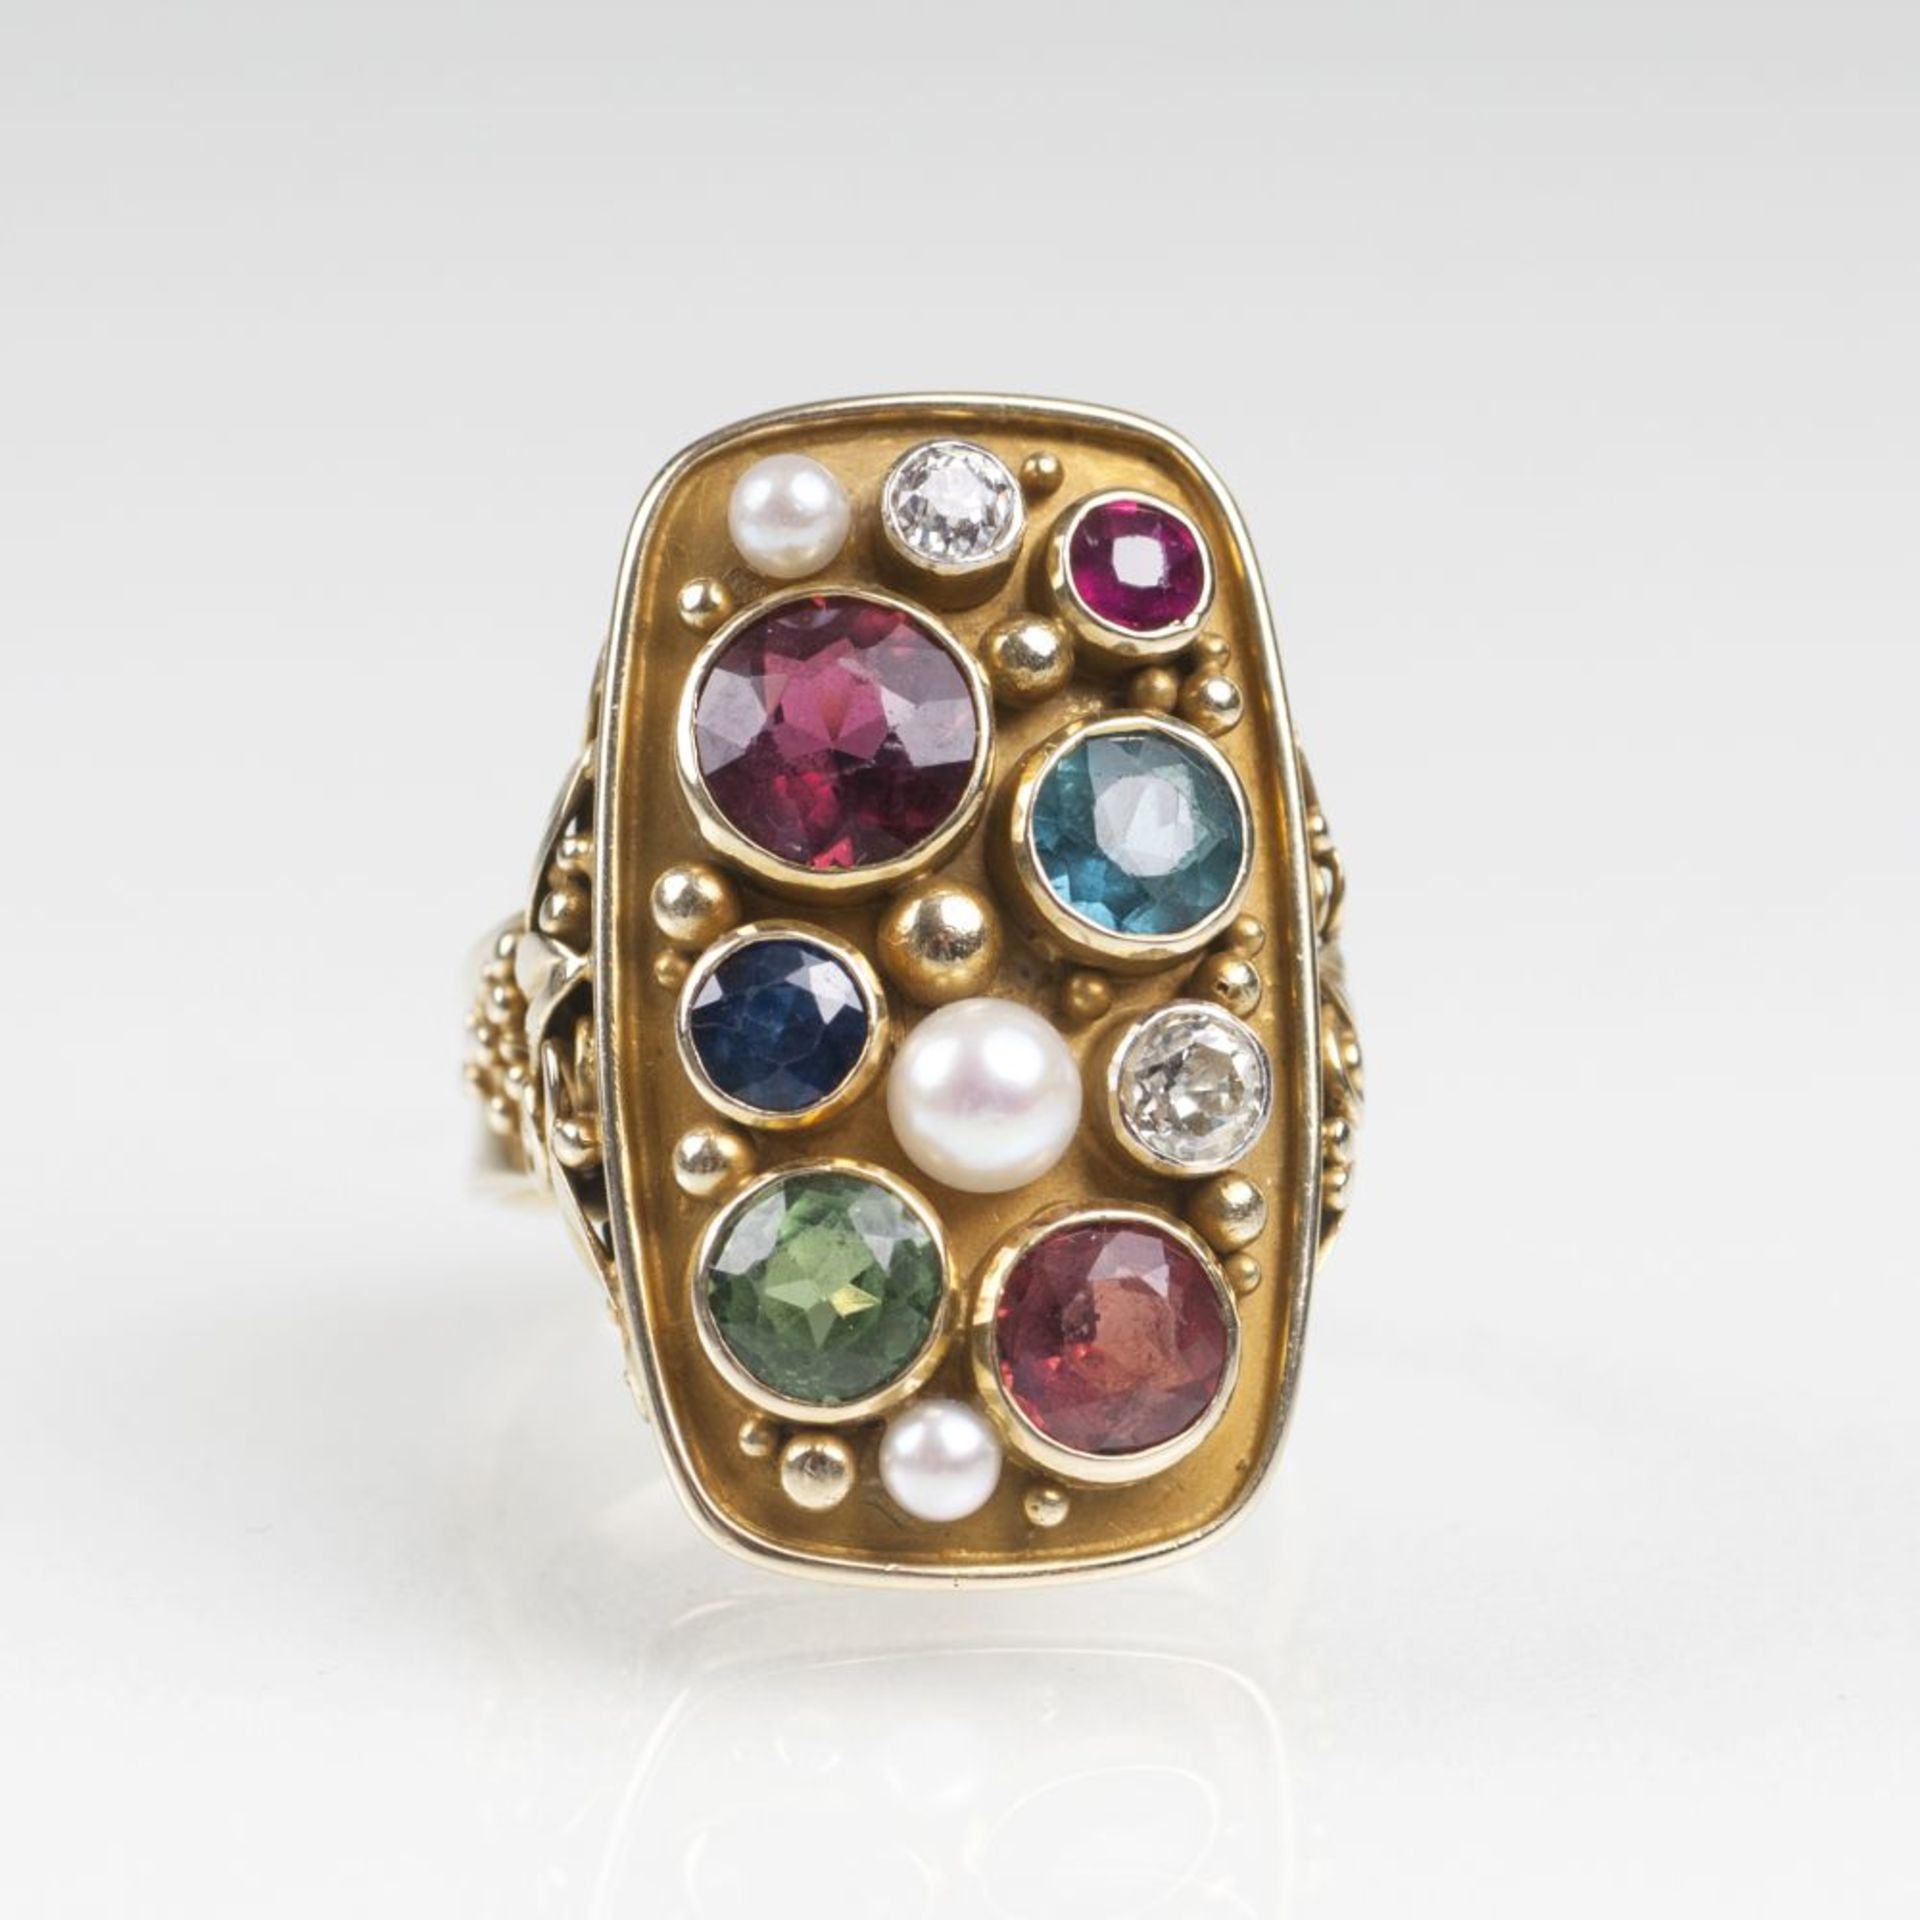 Vintage Gold-Ring mit Turmalinen, Saphir, Rubin, Perlen und DiamantenUm 1930. 14 kt. GG, gest.,